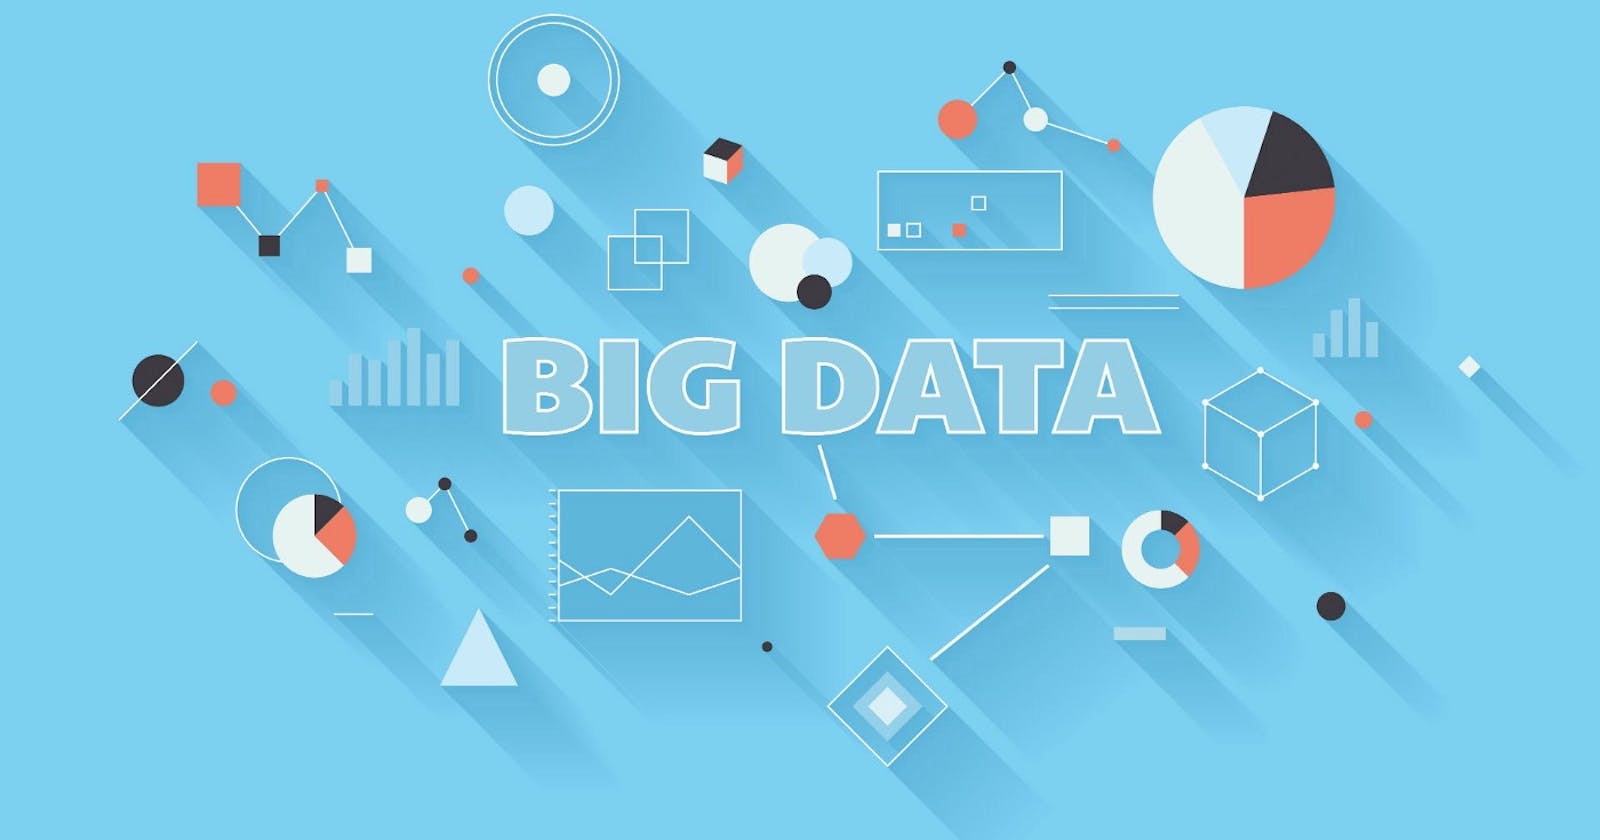 Big Data meets Big Brother